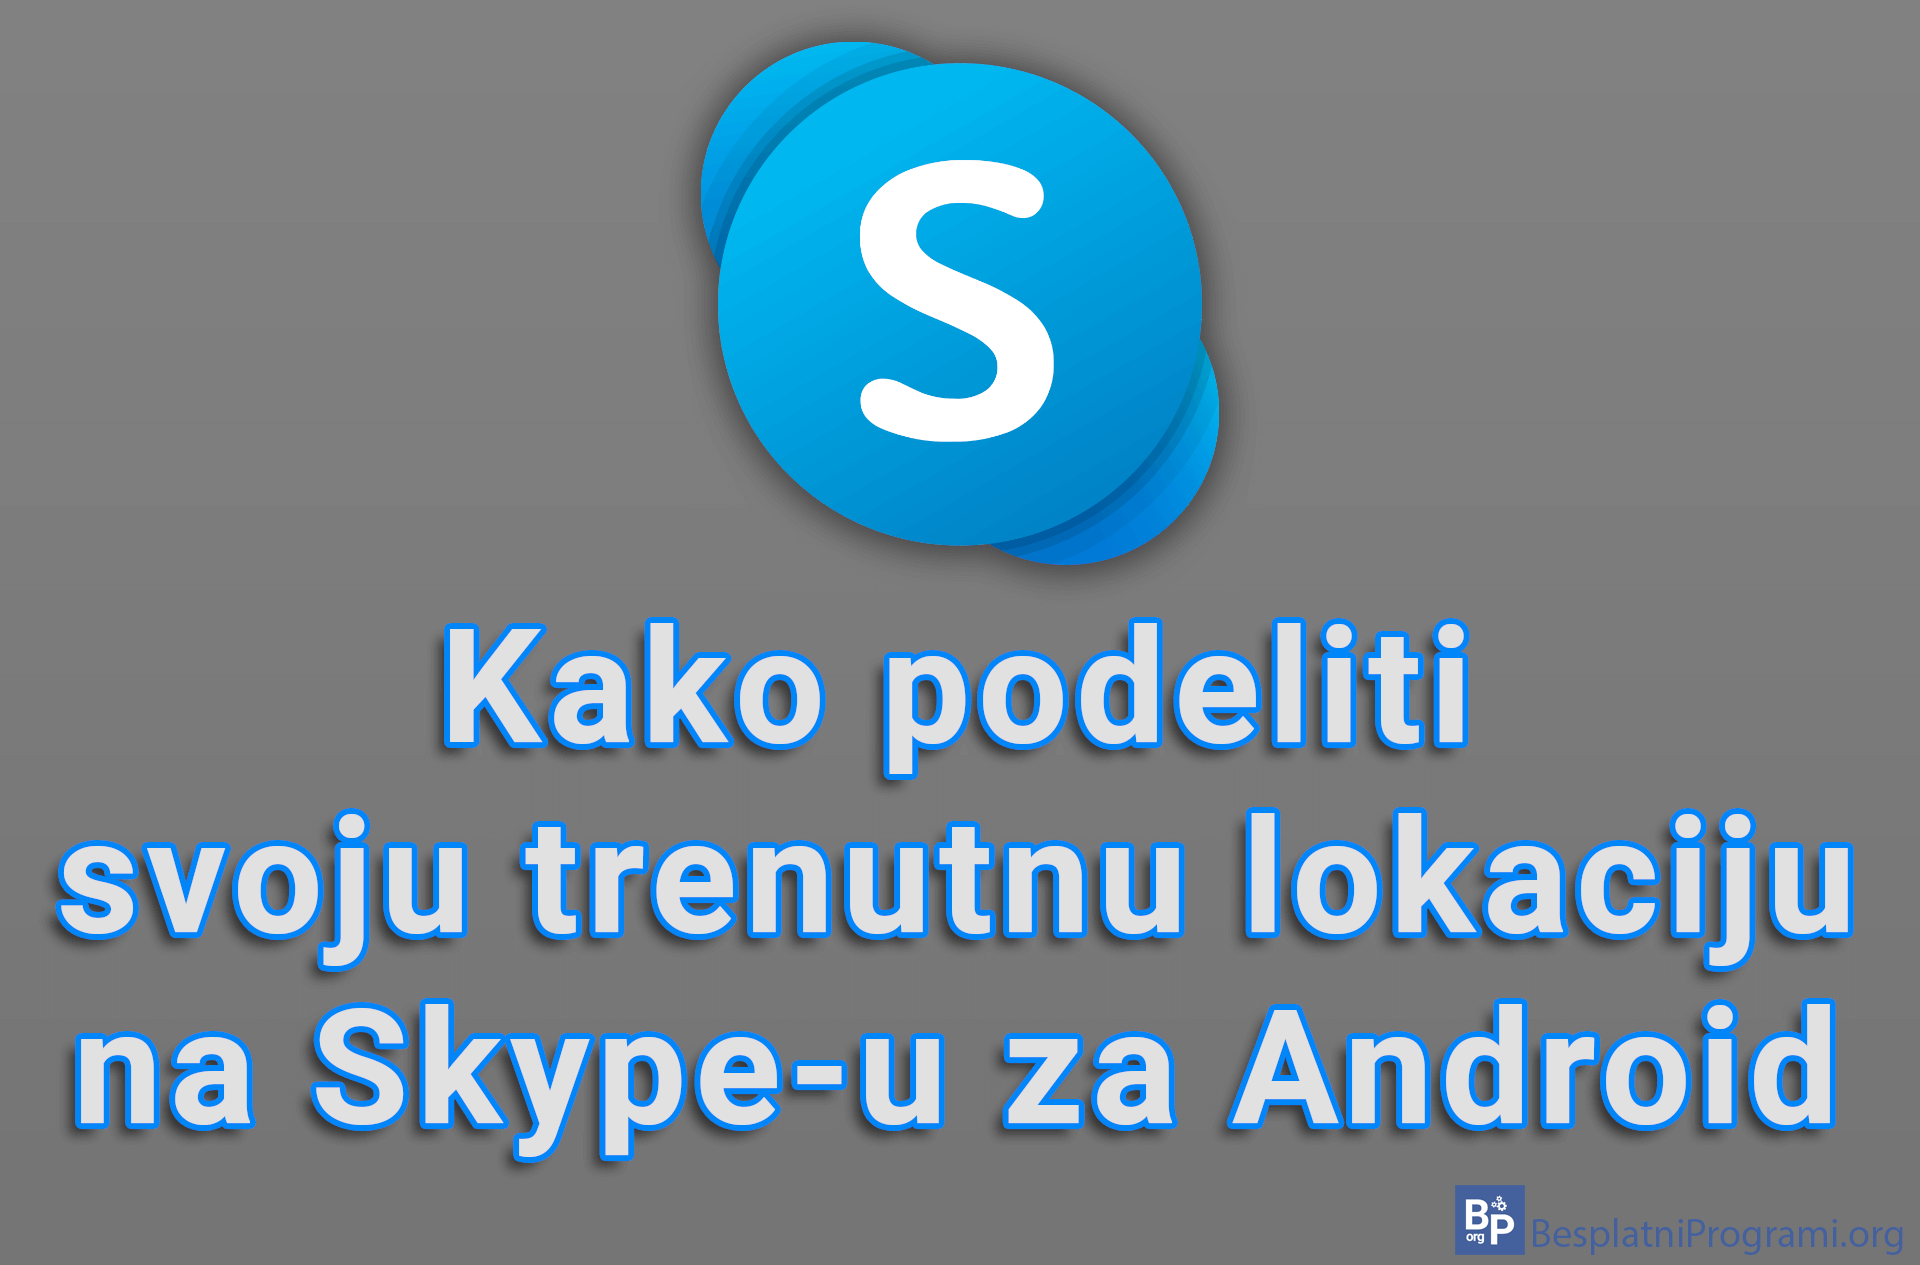 Kako podeliti svoju trenutnu lokaciju na Skype-u za Android